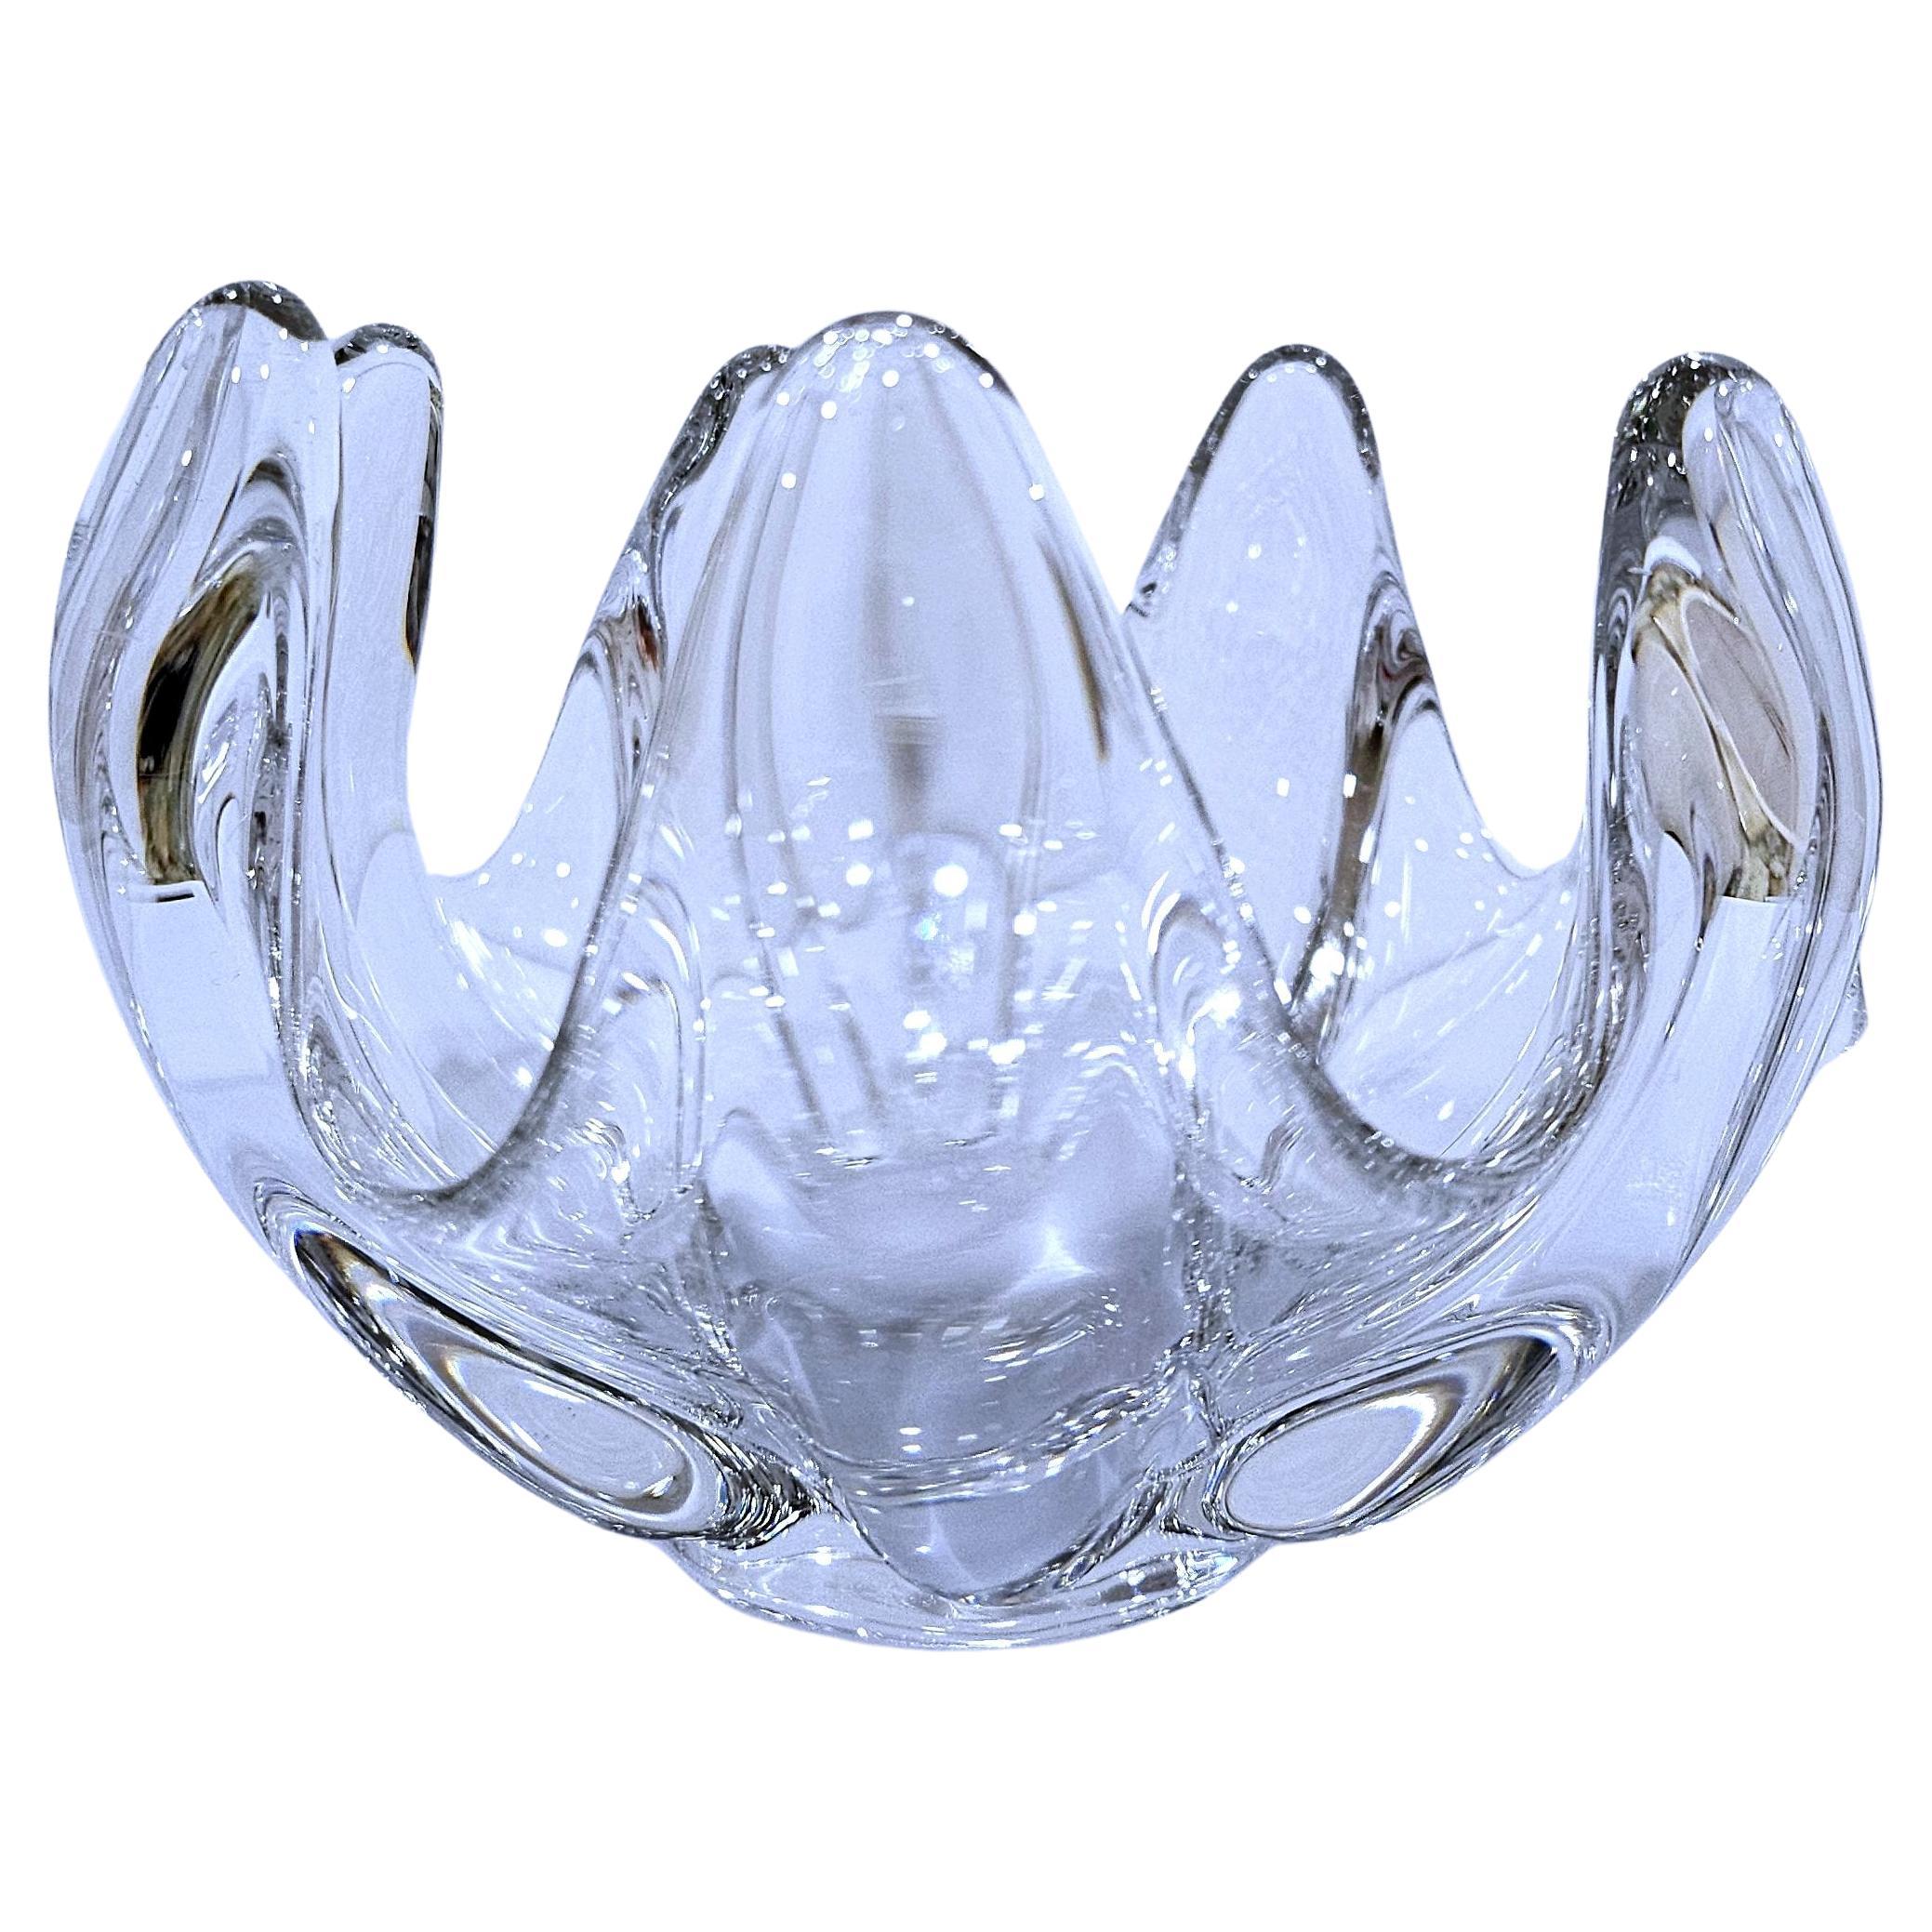 Crystal Art Glass Sculptural Vessel / Dish / Bowl - vintage